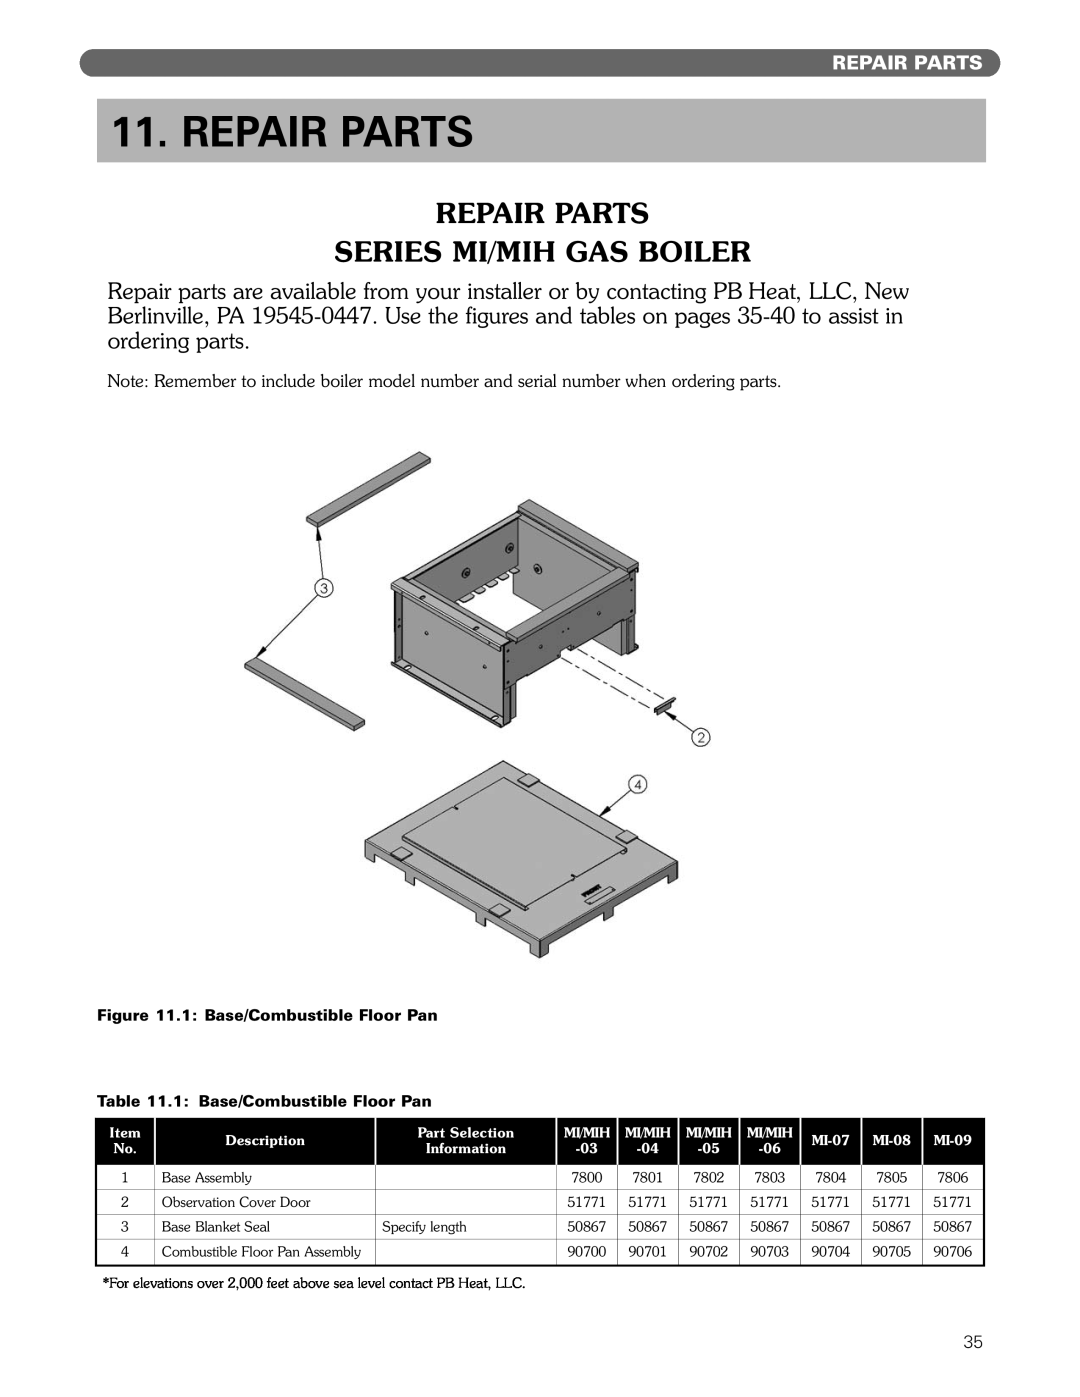 PB Heat MI/MIH series manual Repair Parts Series Mi/Mih Gas Boiler 